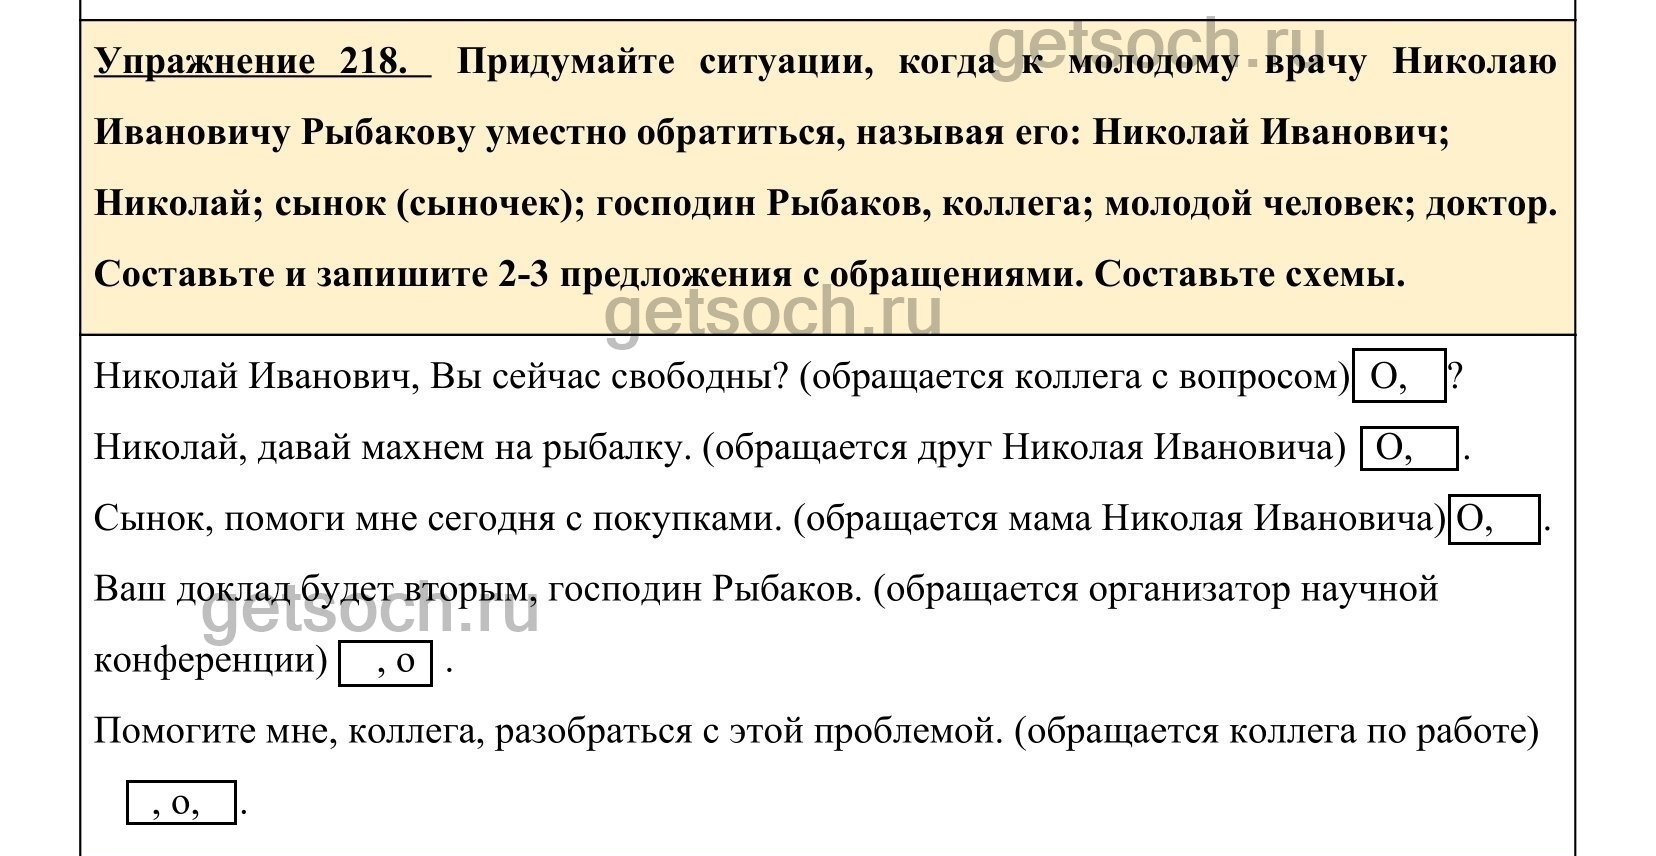 Русский язык 5 класс упражнение 218. Русский язык 5 класс 1 часть страница 100 упражнение 218.